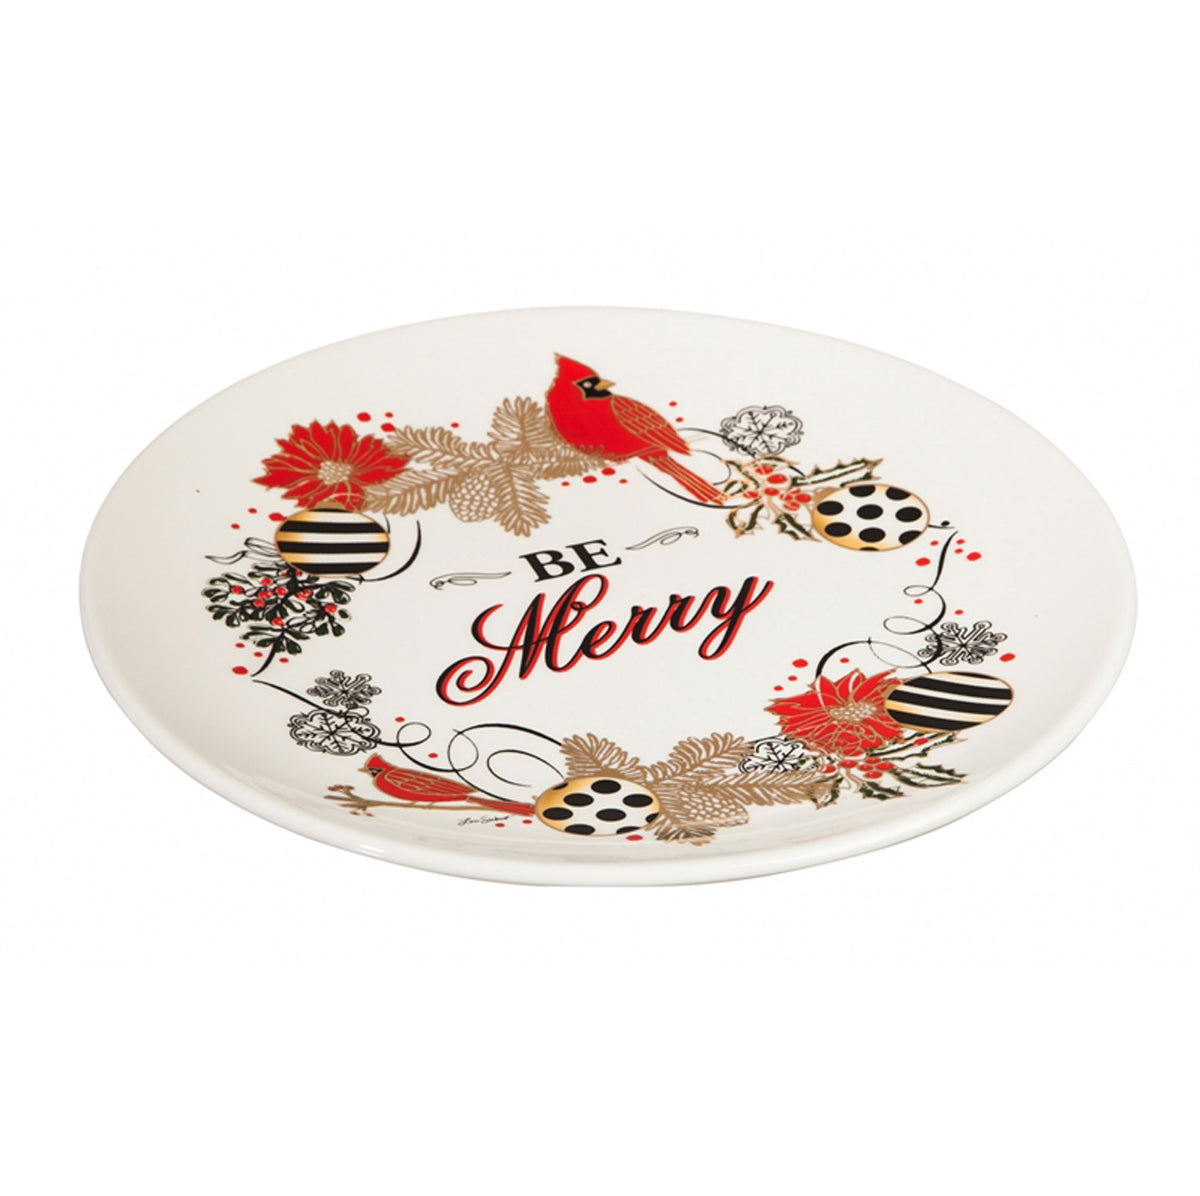 Be Merry Christmas Platter